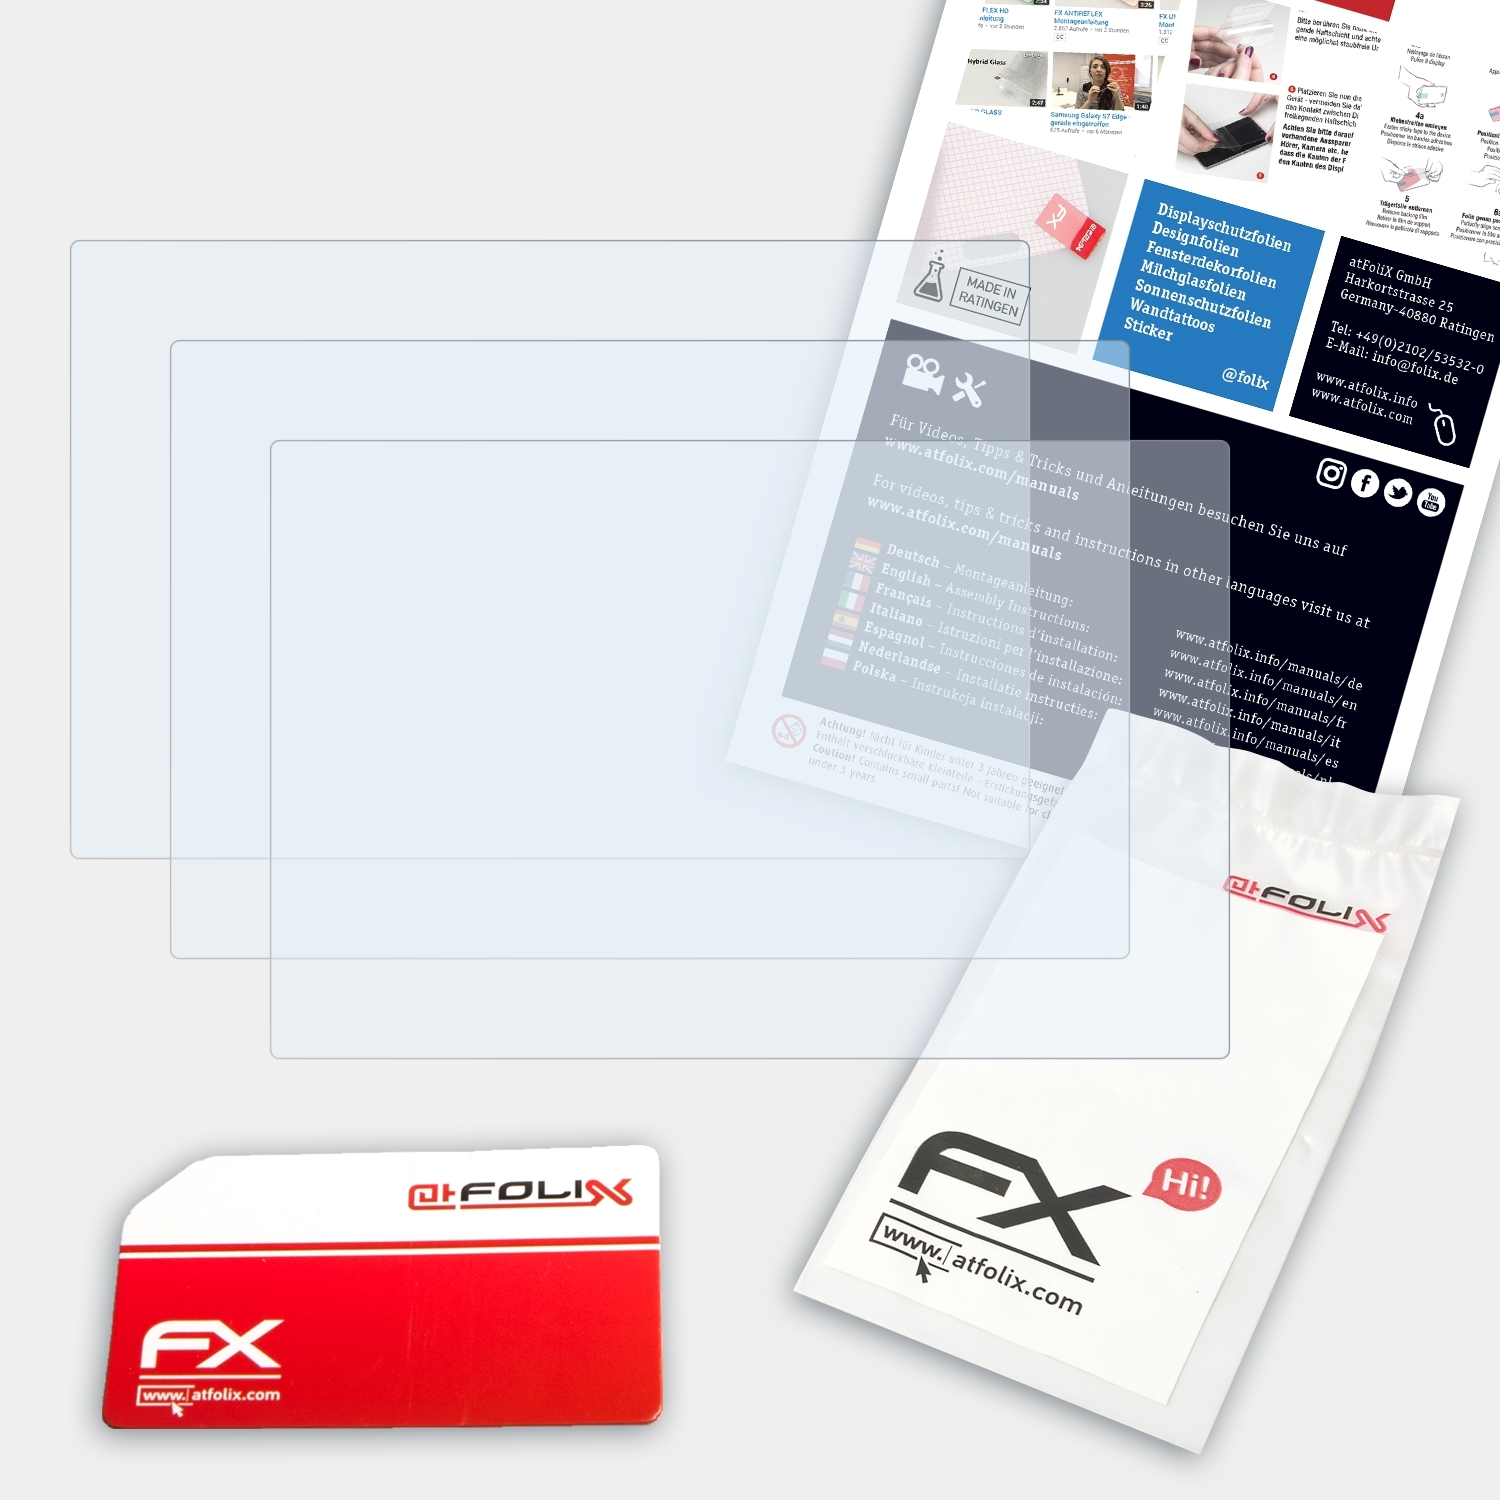 FX-Clear Lumix Panasonic 3x Displayschutz(für ATFOLIX DMC-GF1)